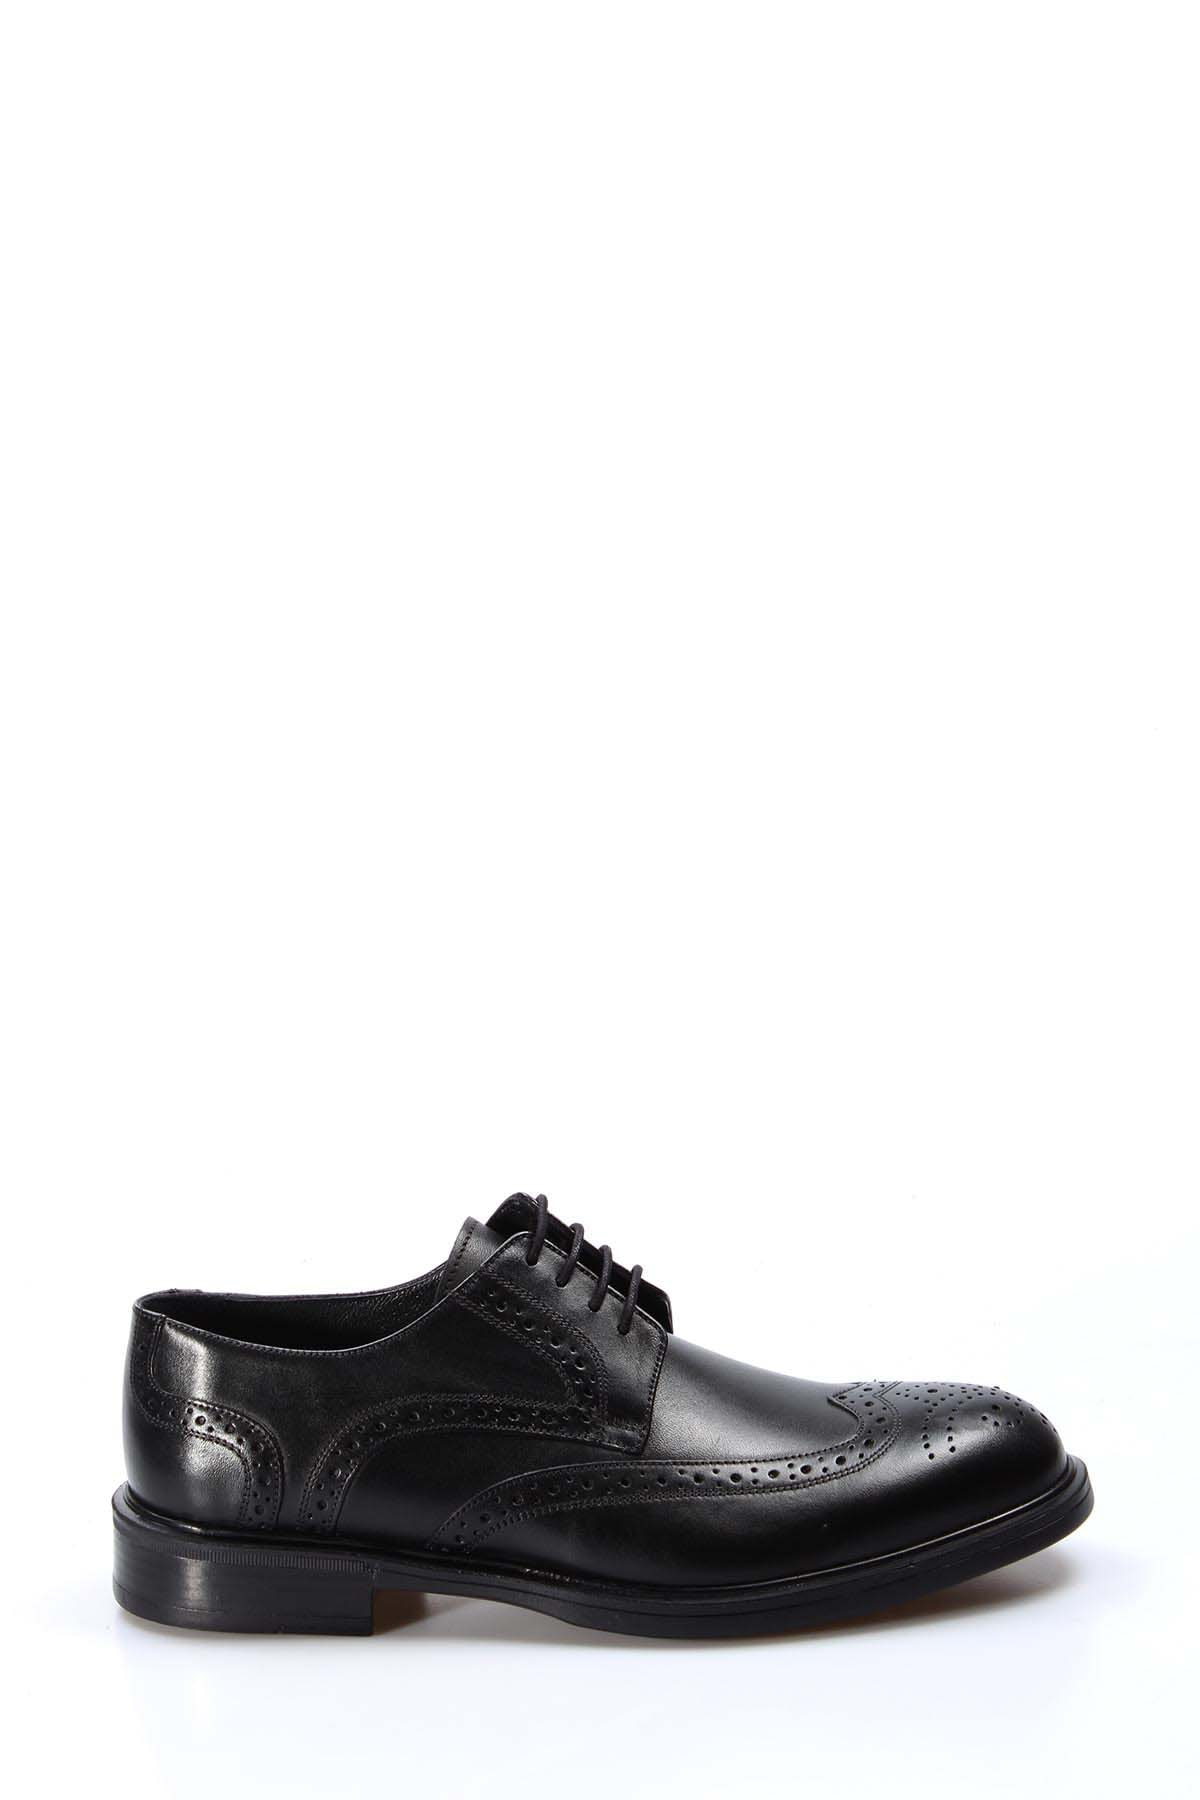 Erkek Oxford Ayakkabı Modelleri ve Özellikleri